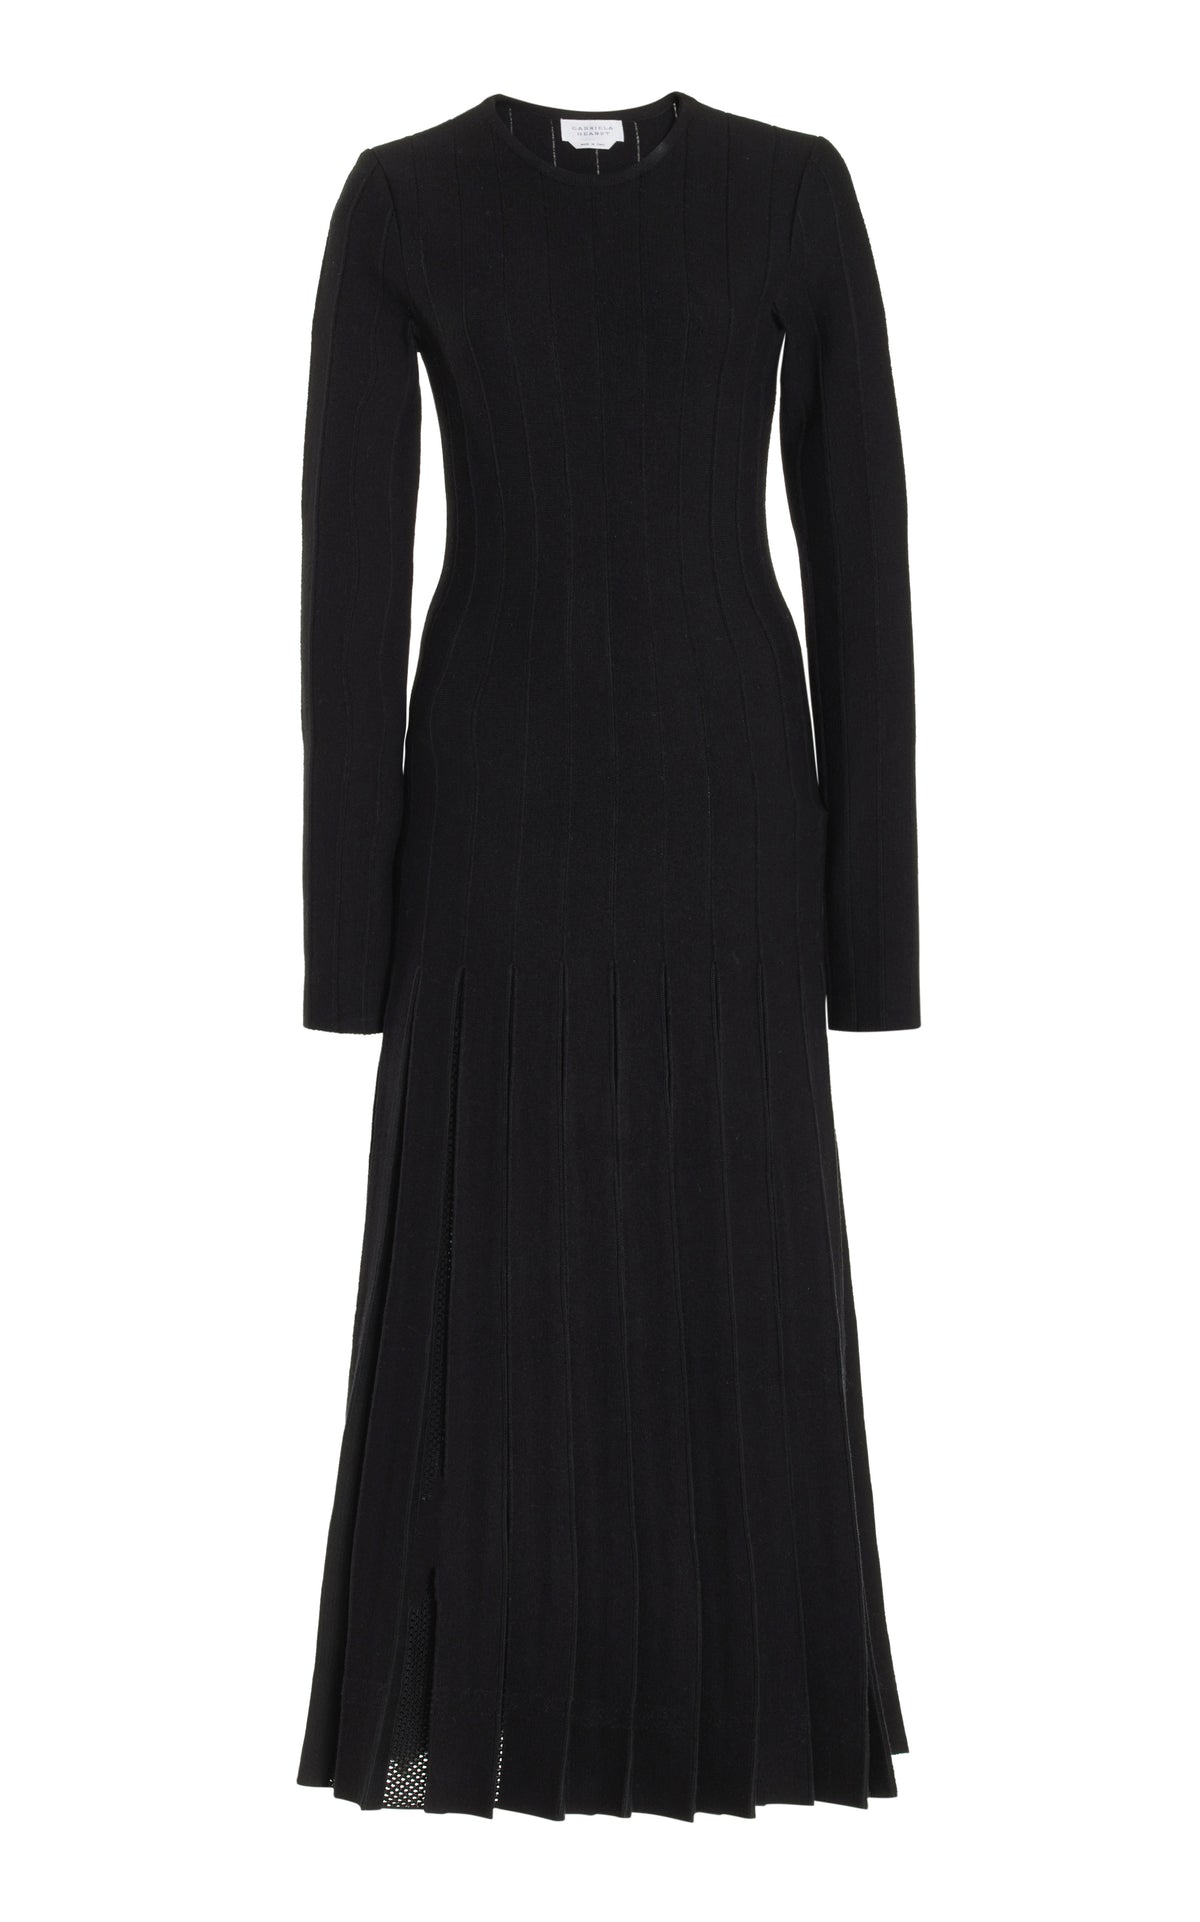 Walsh Knit Pleated Dress in Black Wool